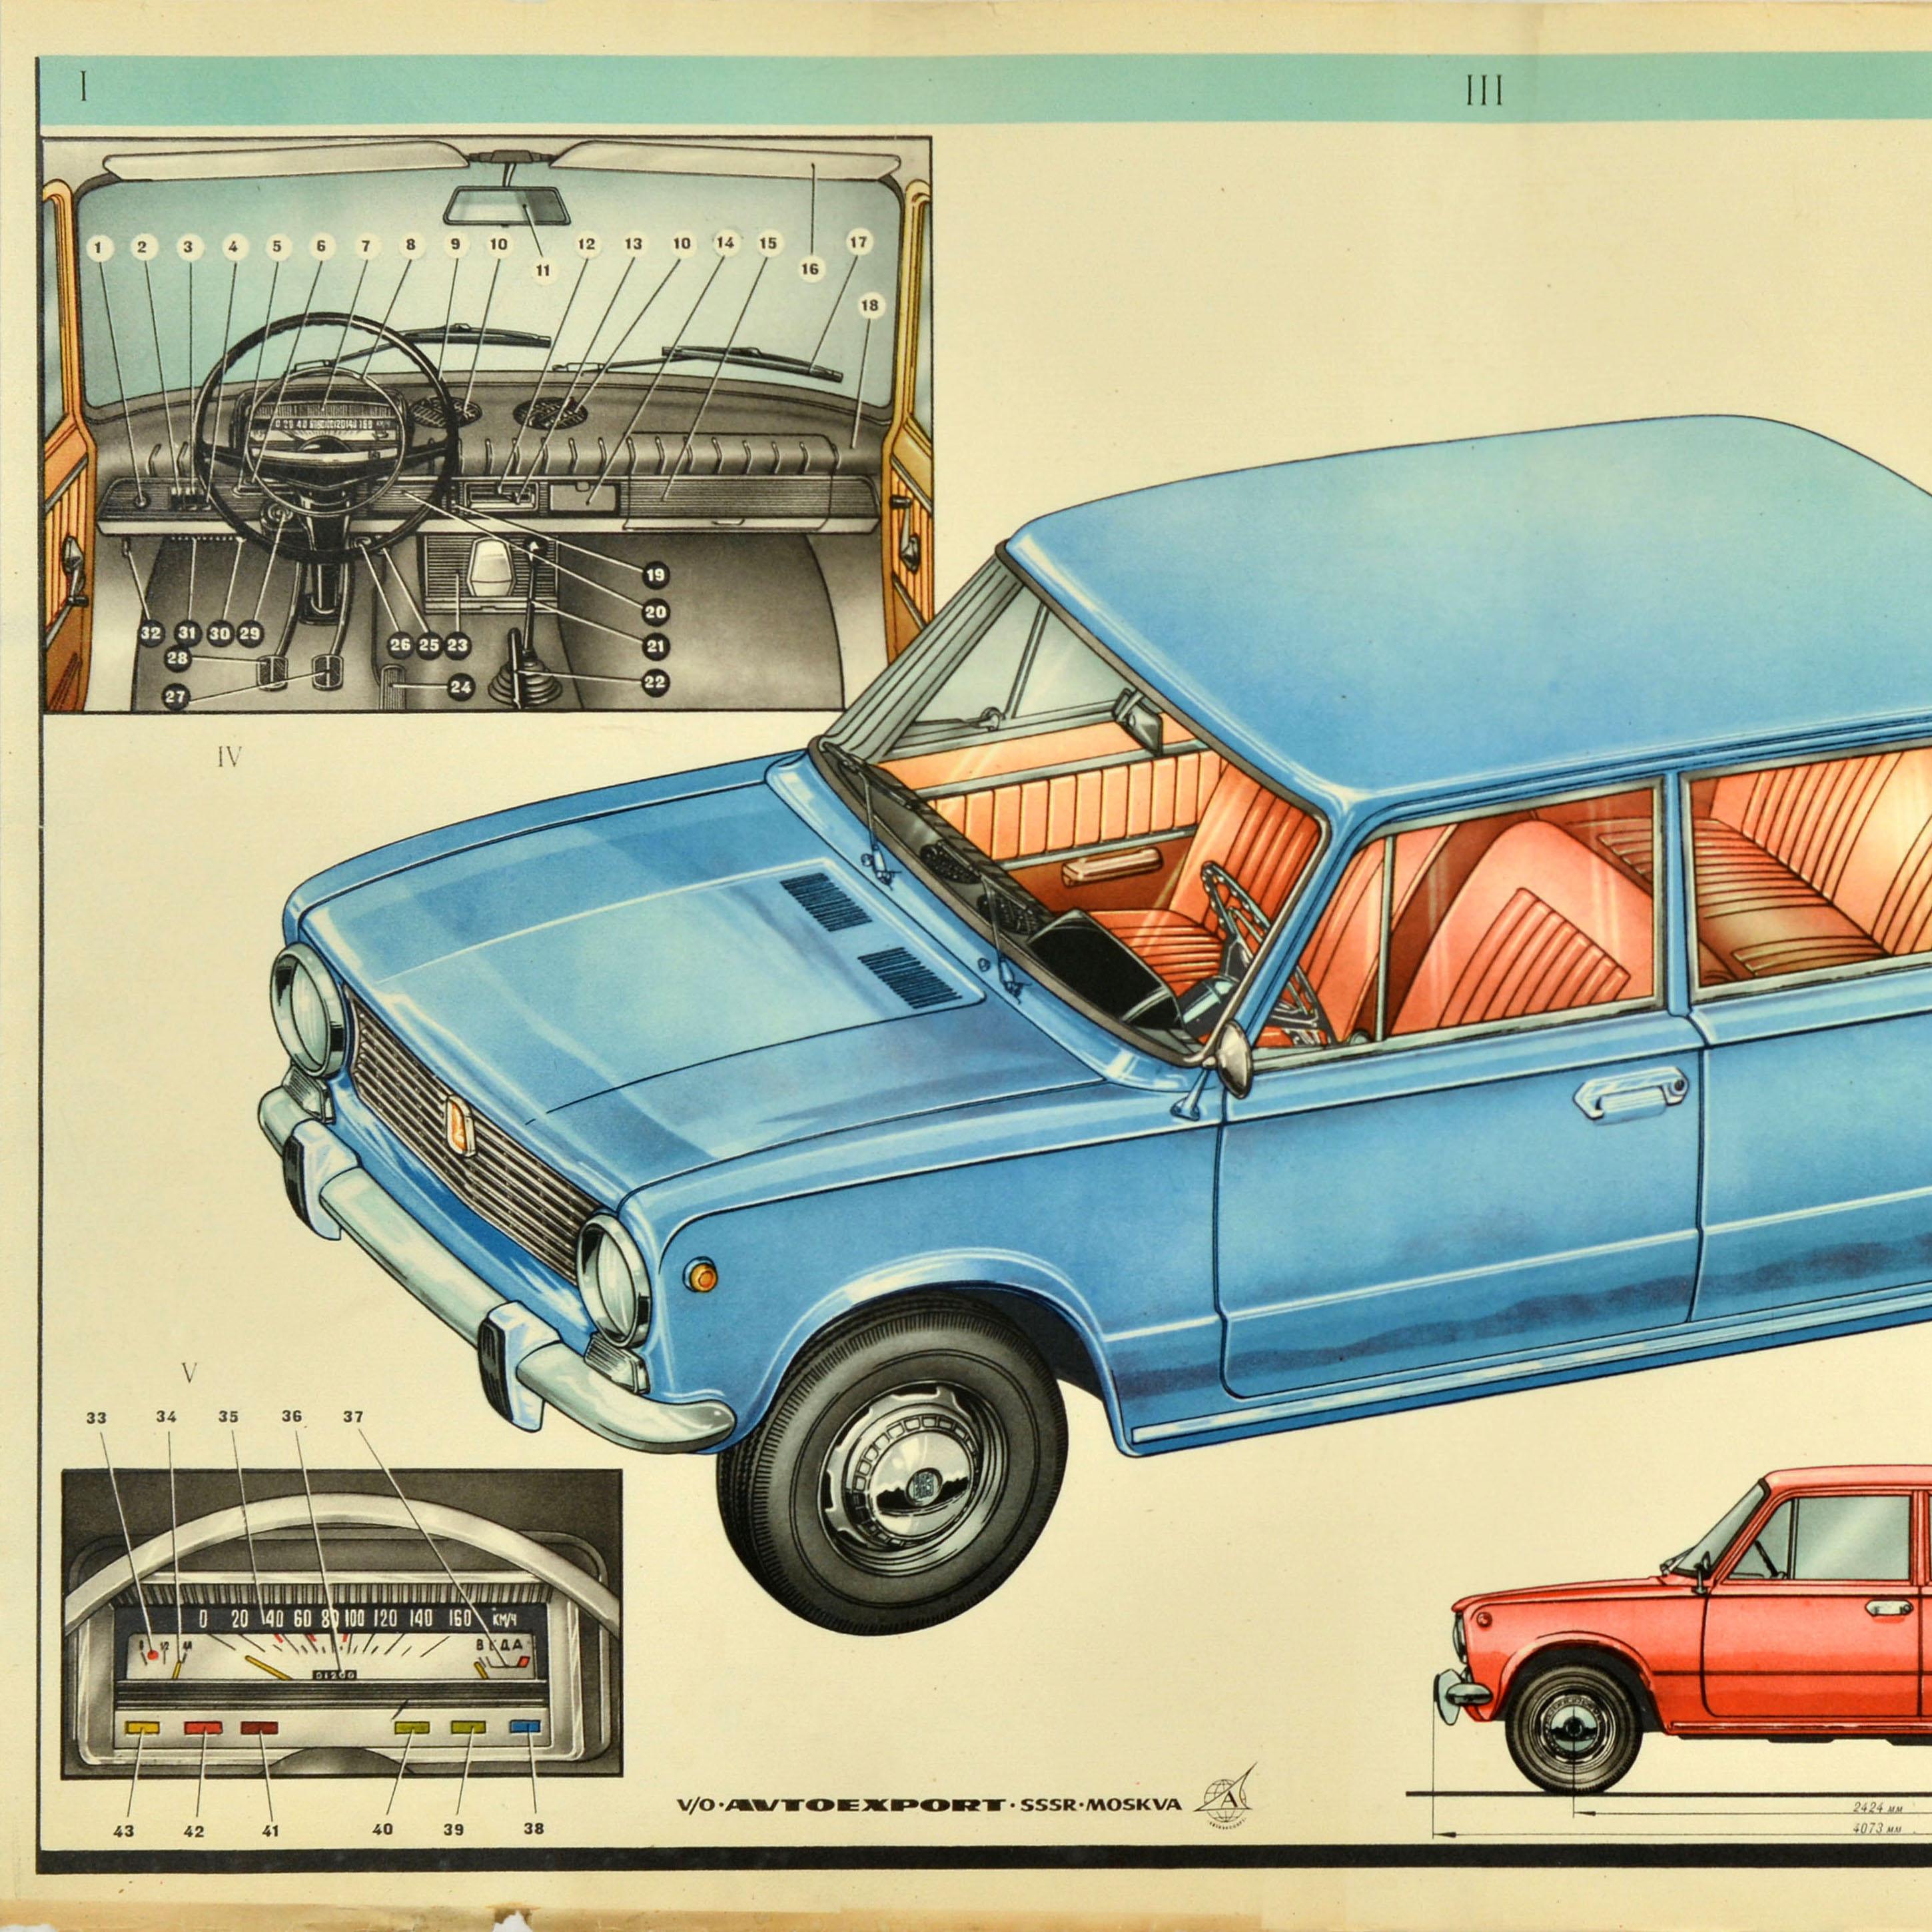 Affiche publicitaire originale de voitures soviétiques Lada Car AvtoVAZ URSS Moscou - Print de Unknown